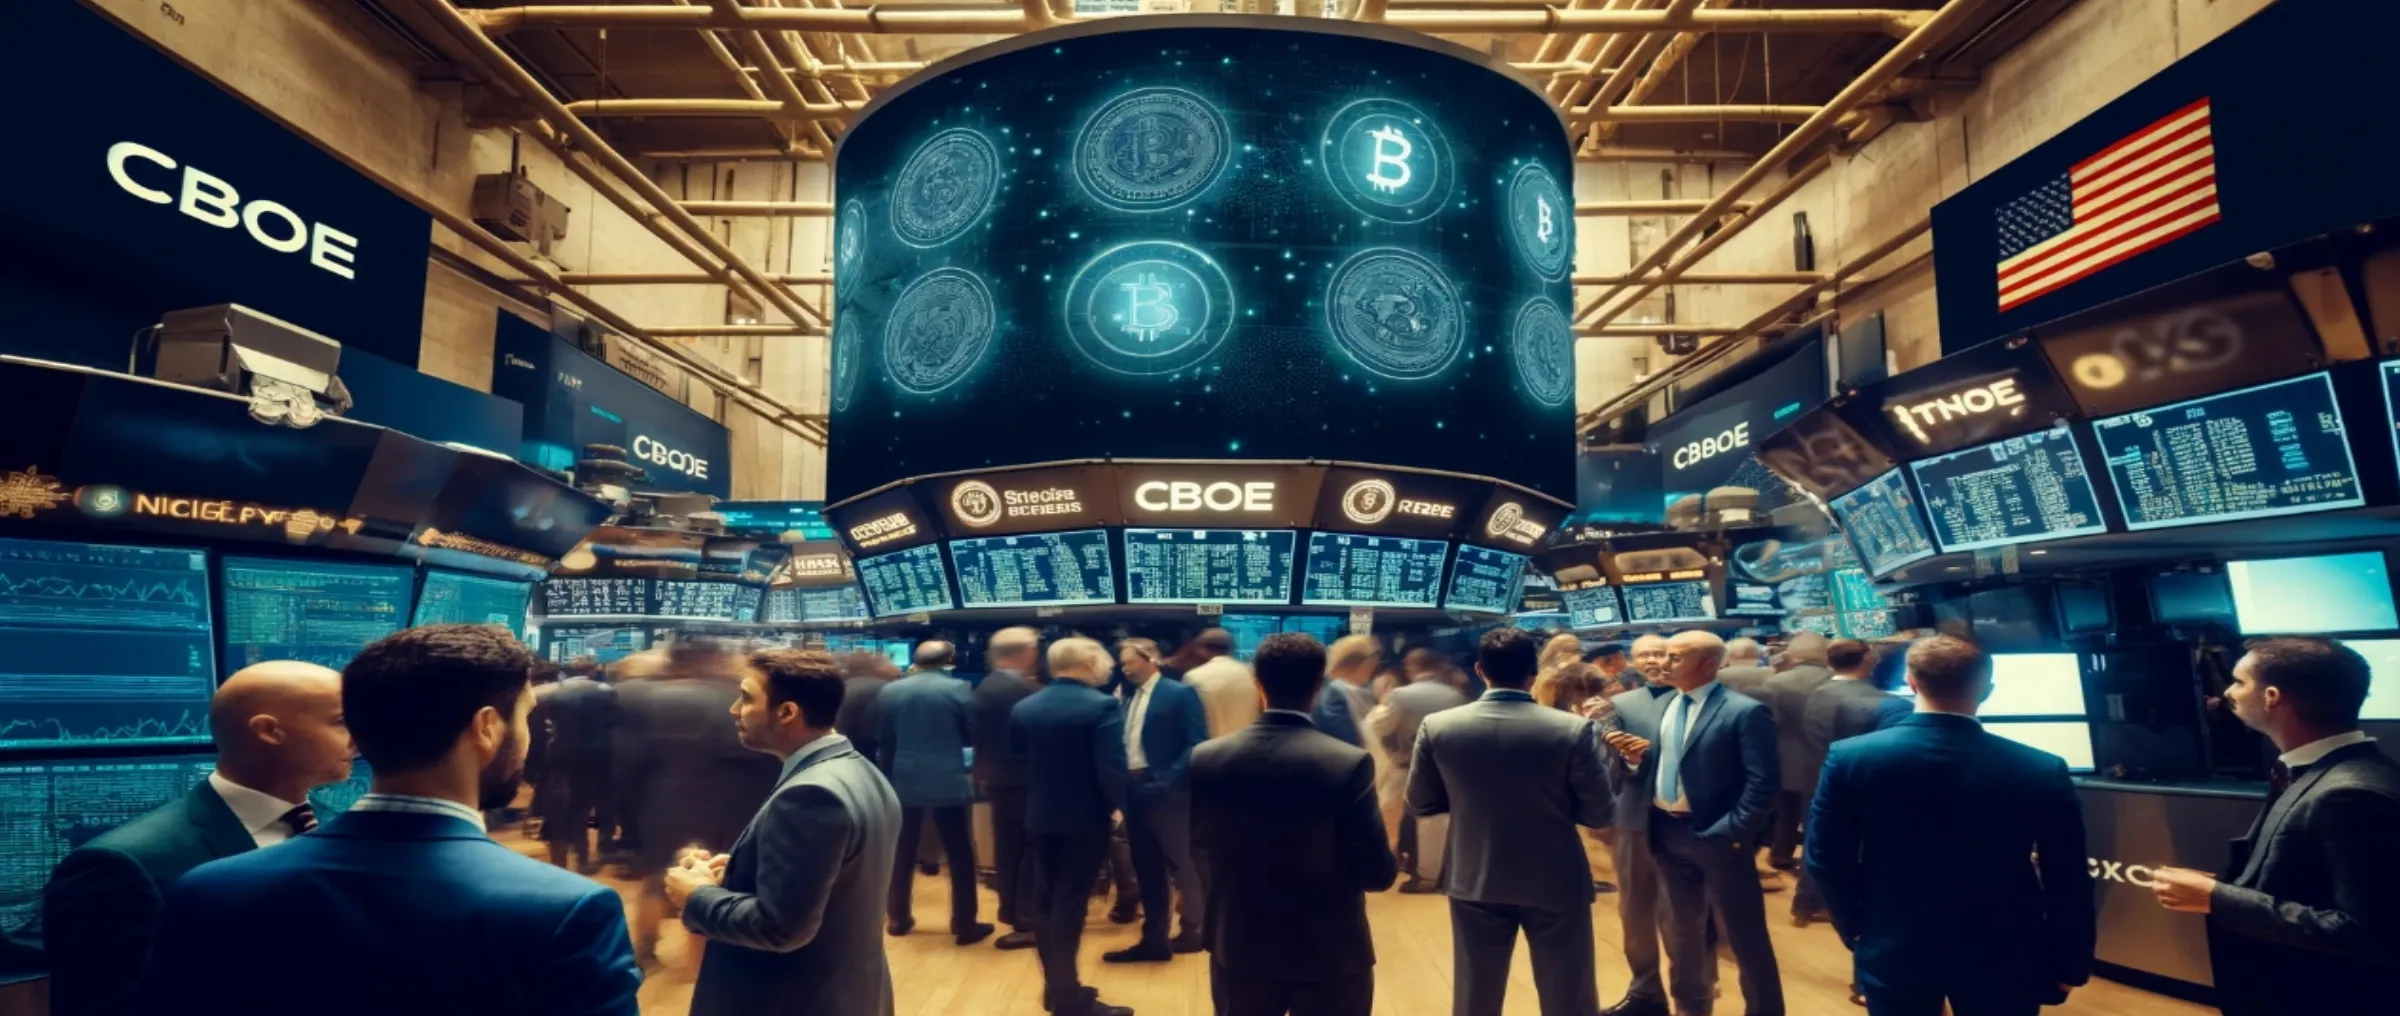 Фондовая биржа Cboe собирается прекратить торговлю криптовалютами